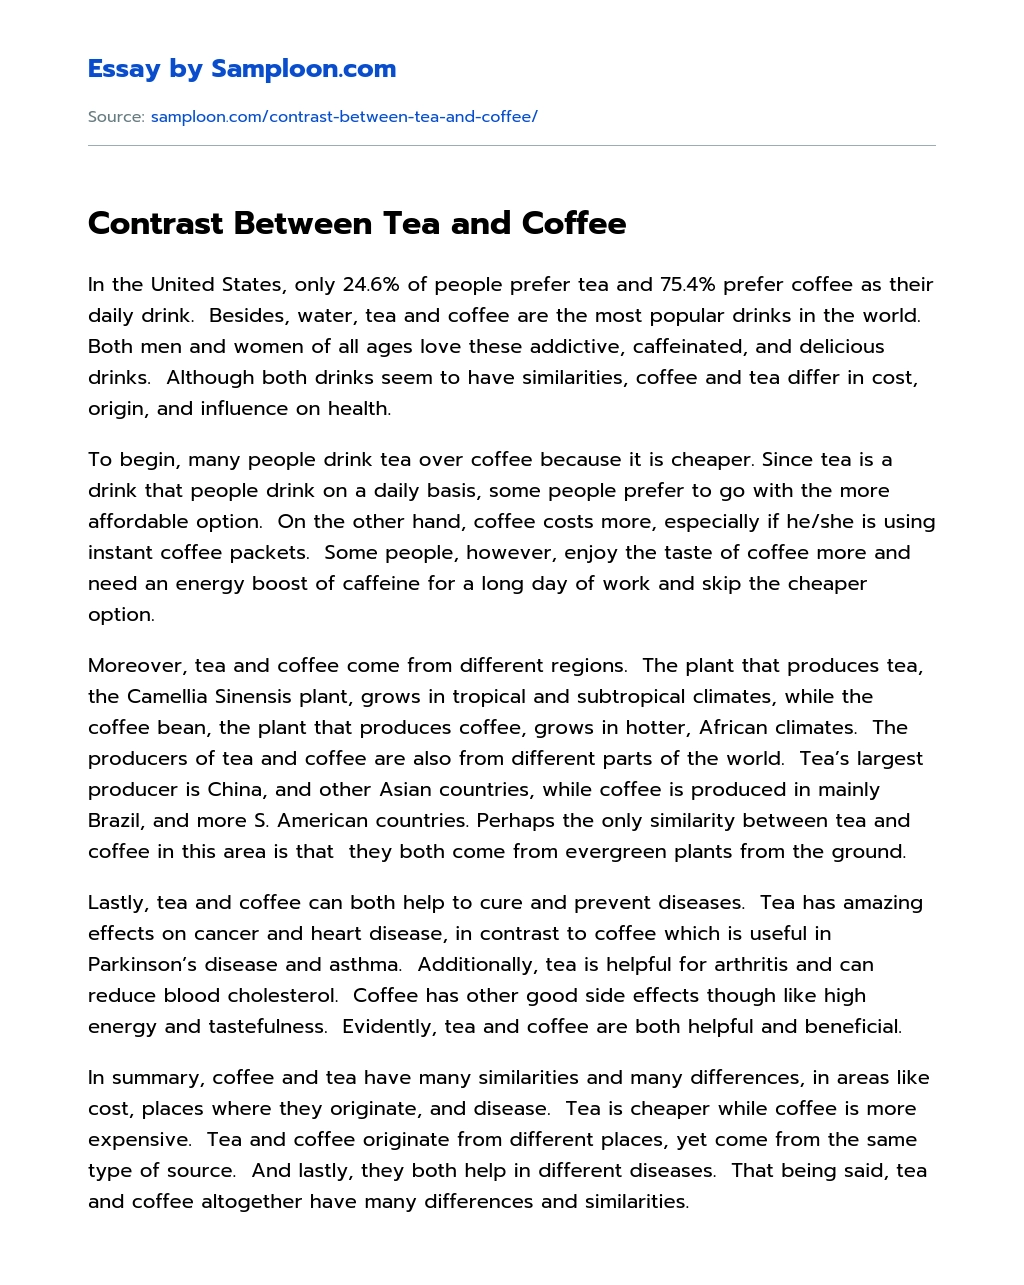 Contrast Between Tea and Coffee essay